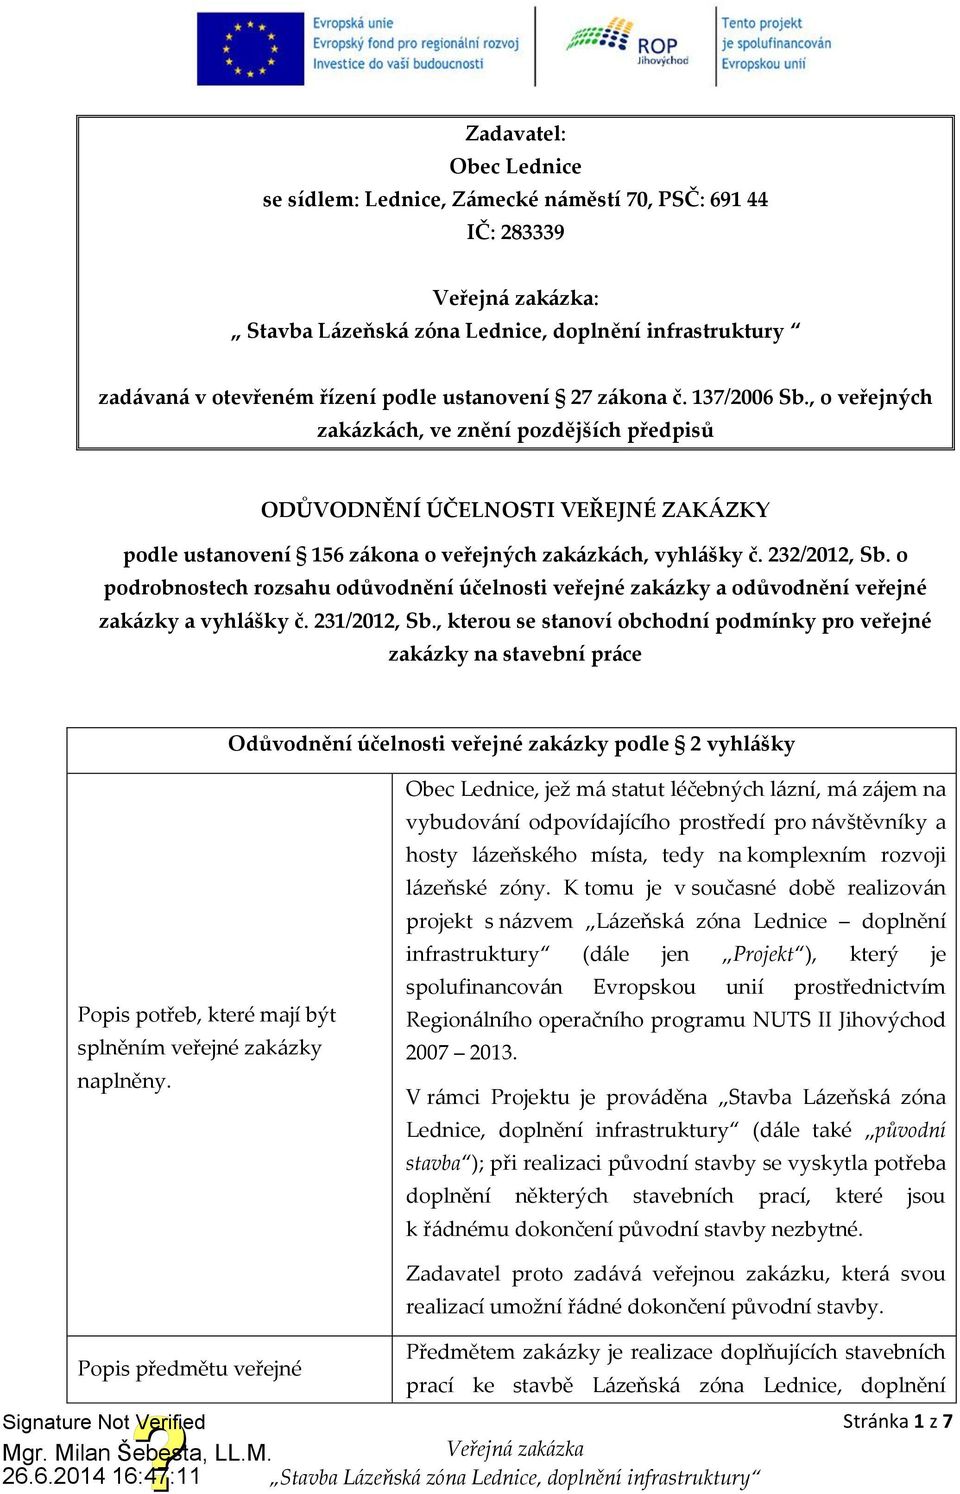 232/2012, Sb. o podrobnostech rozsahu odůvodnění účelnosti veřejné zakázky a odůvodnění veřejné zakázky a vyhlášky č. 231/2012, Sb.